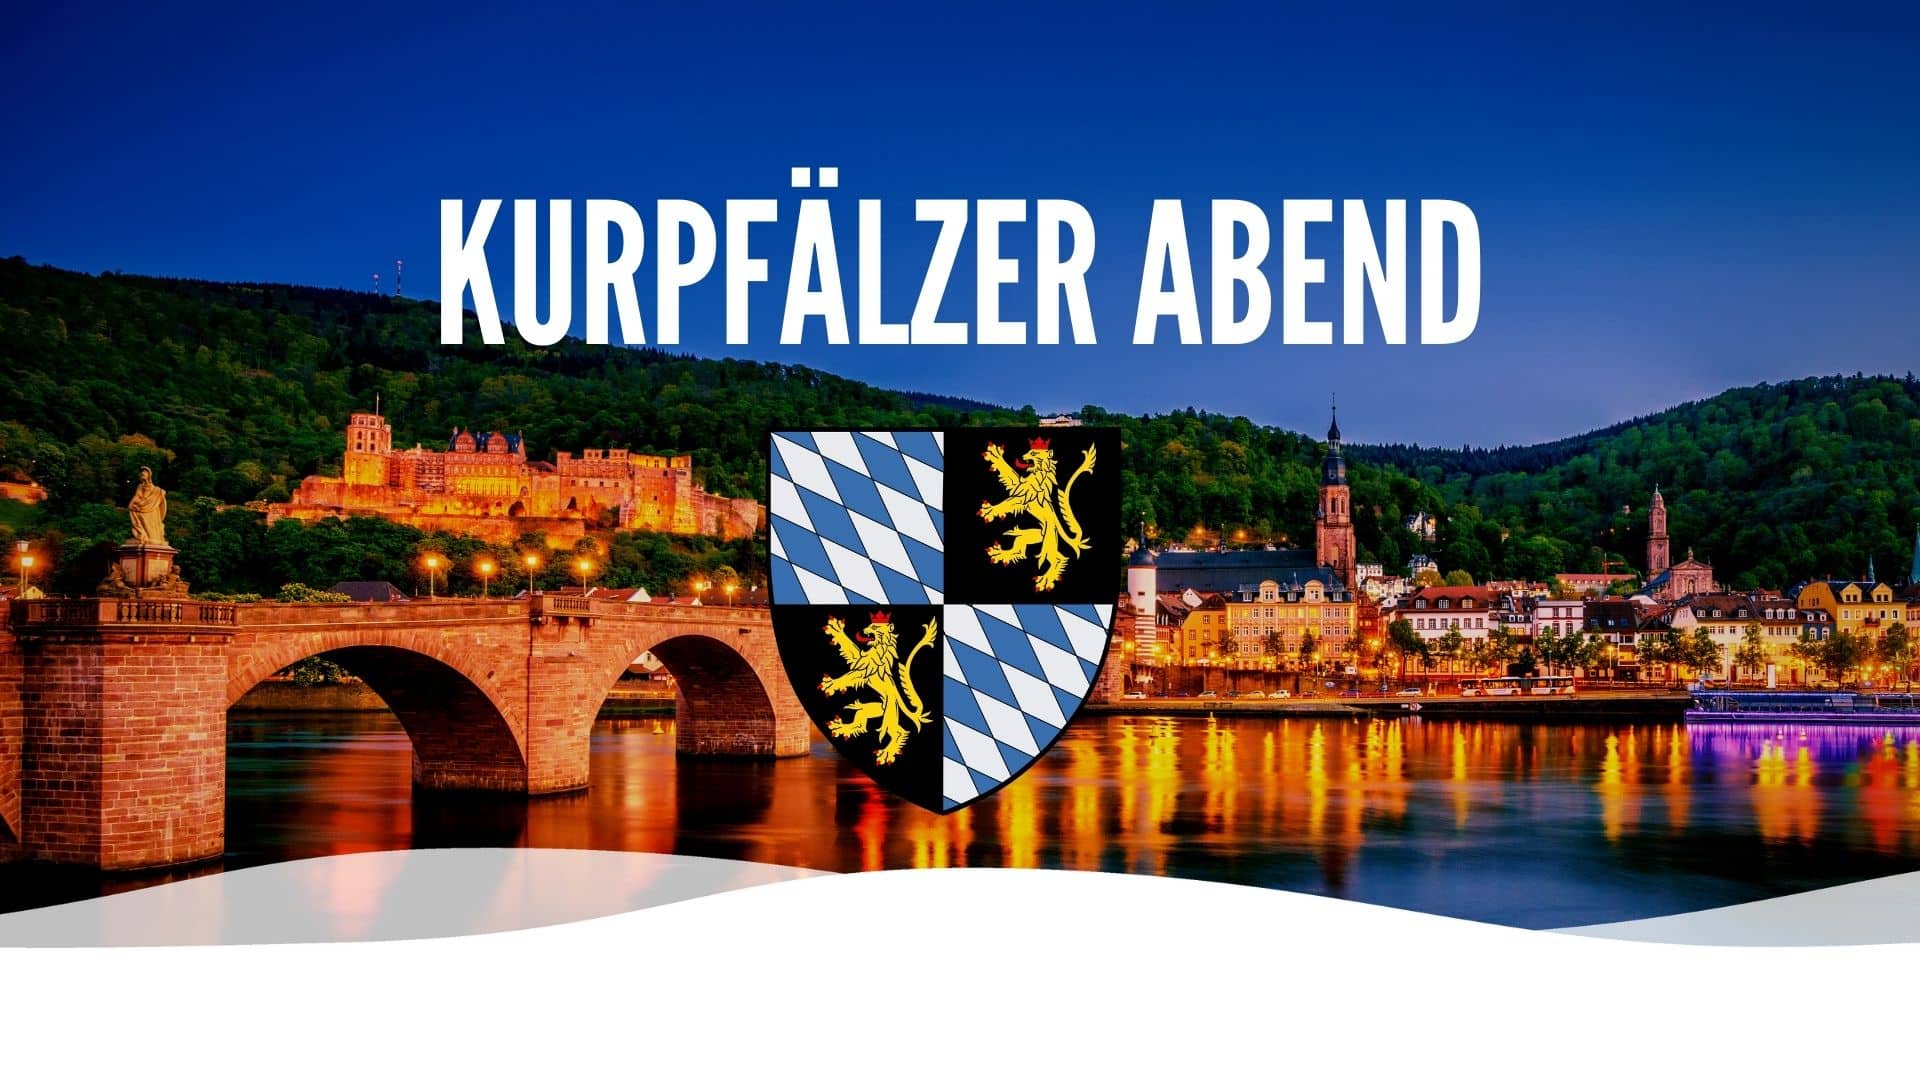 Kurpfaelzer Abend • Weisse Flotte Heidelberg